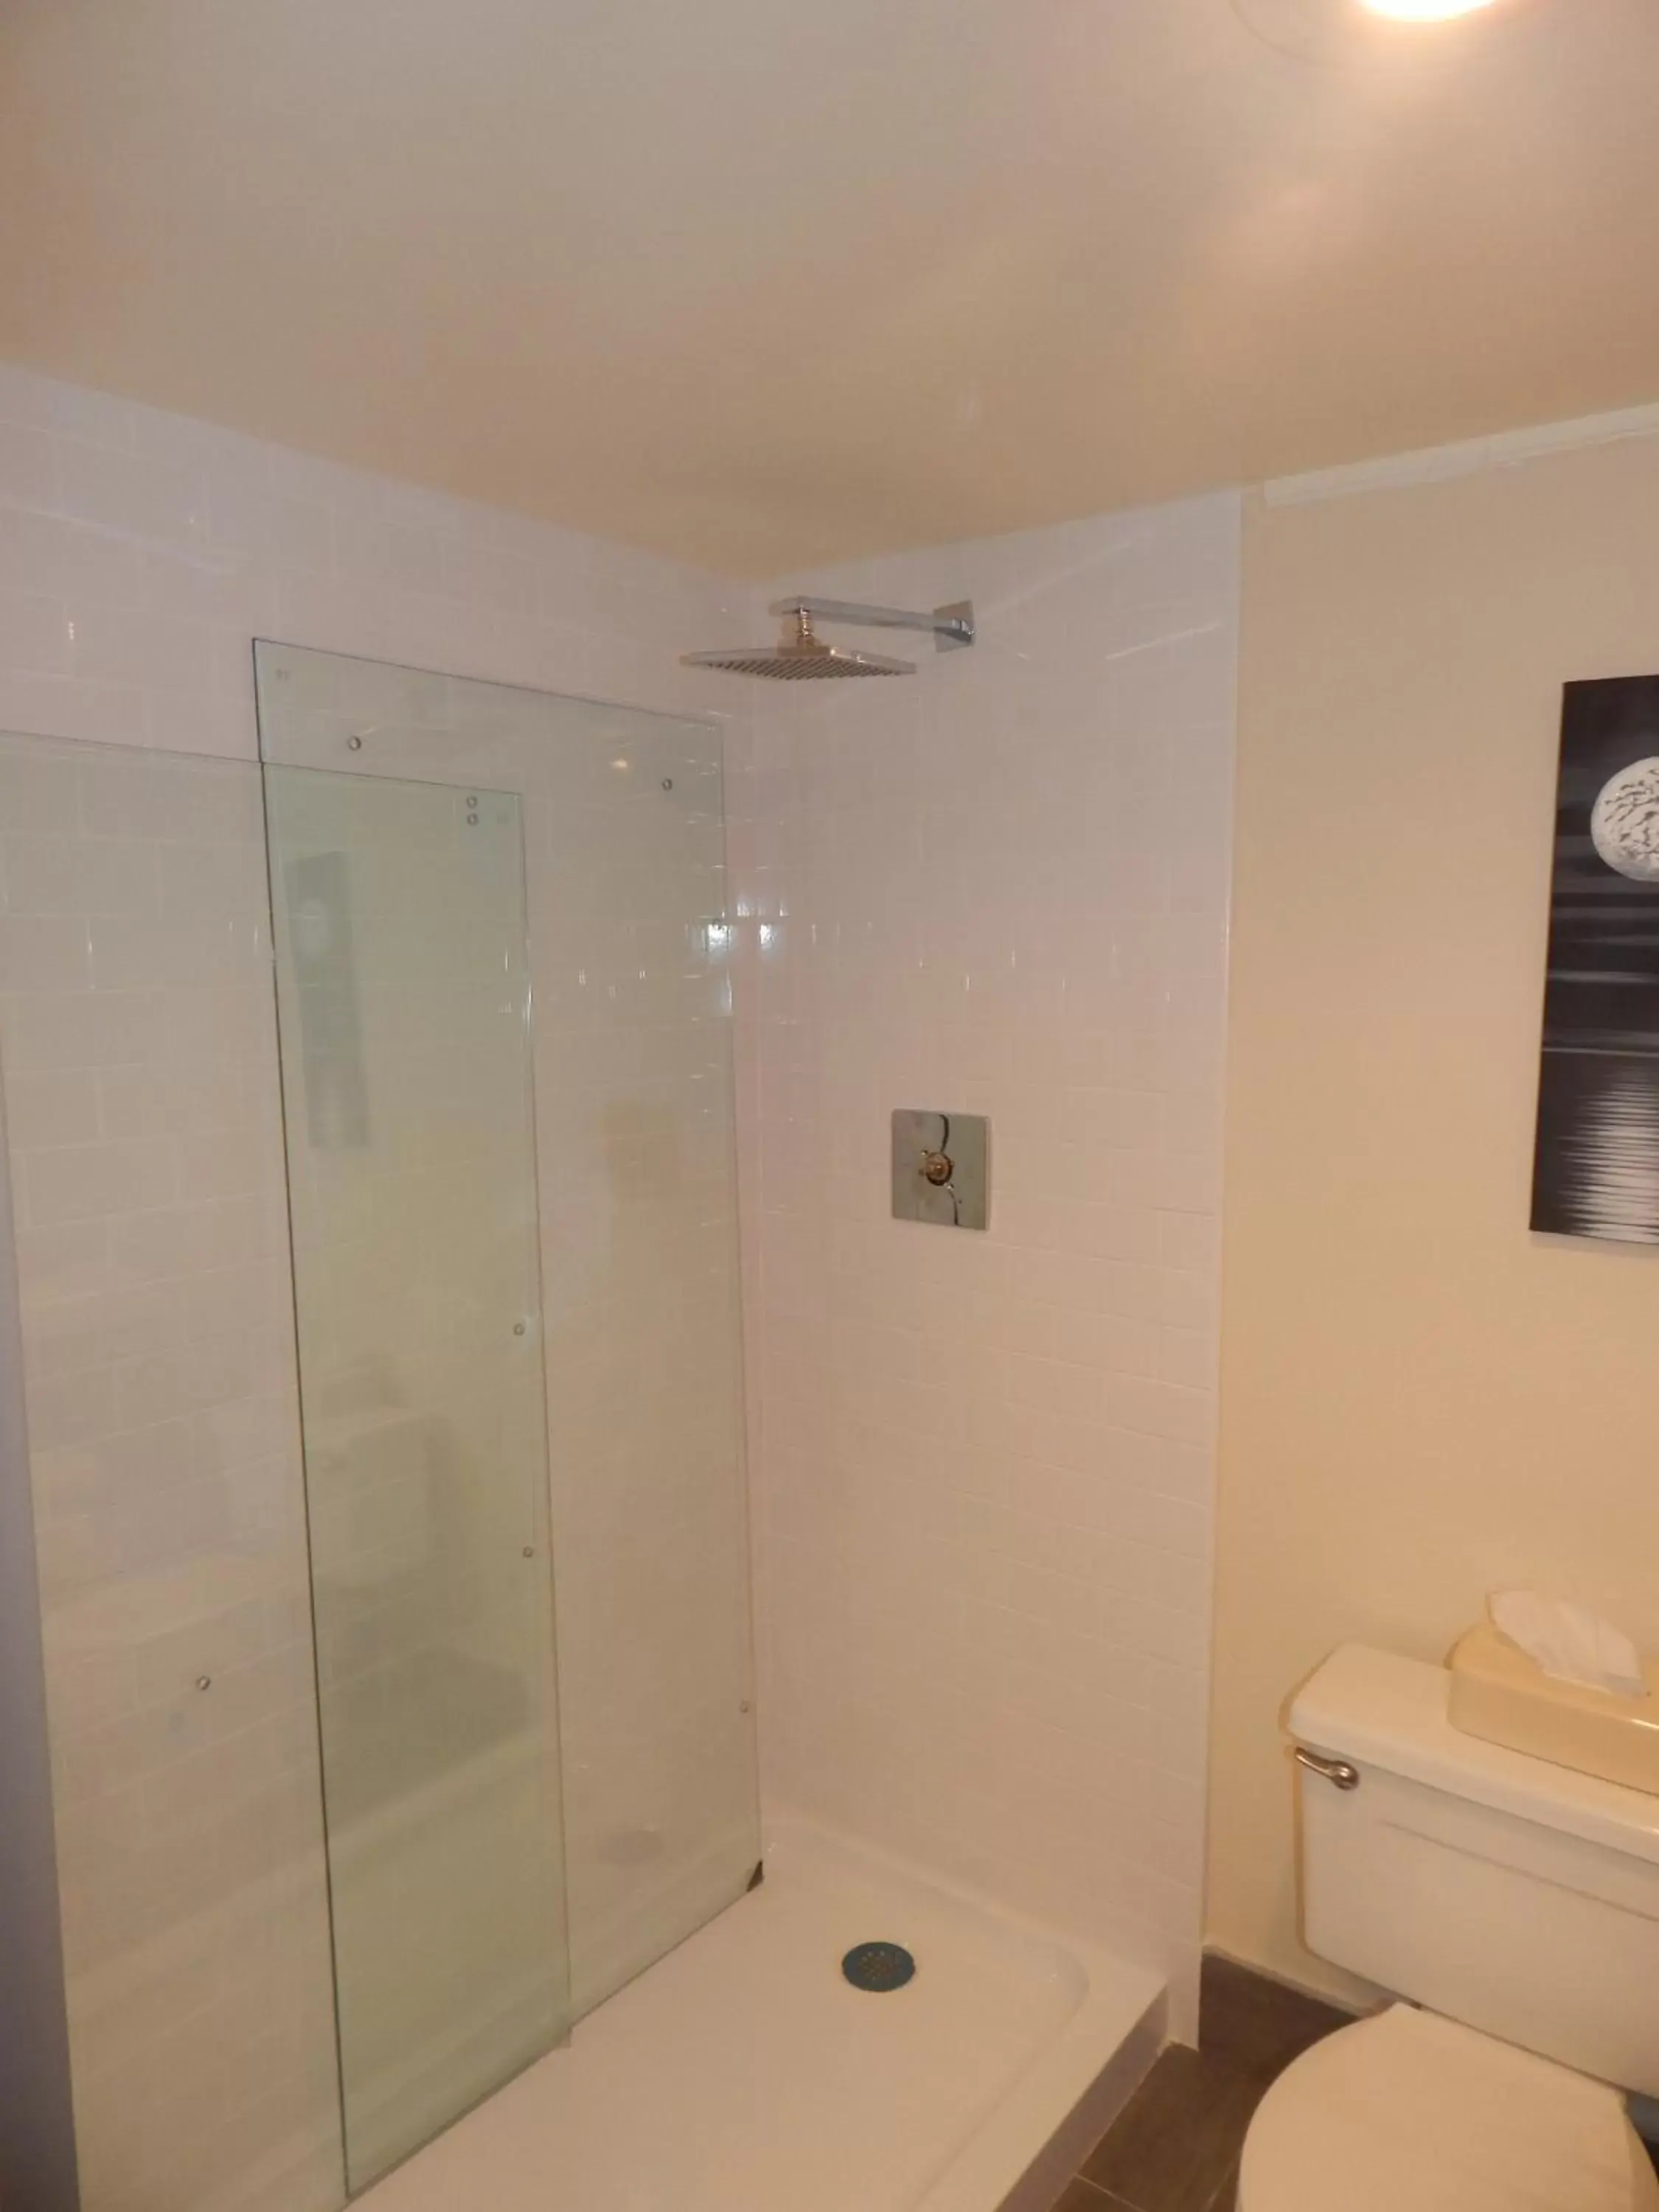 Shower, Bathroom in Ramada by Wyndham Beaver Falls